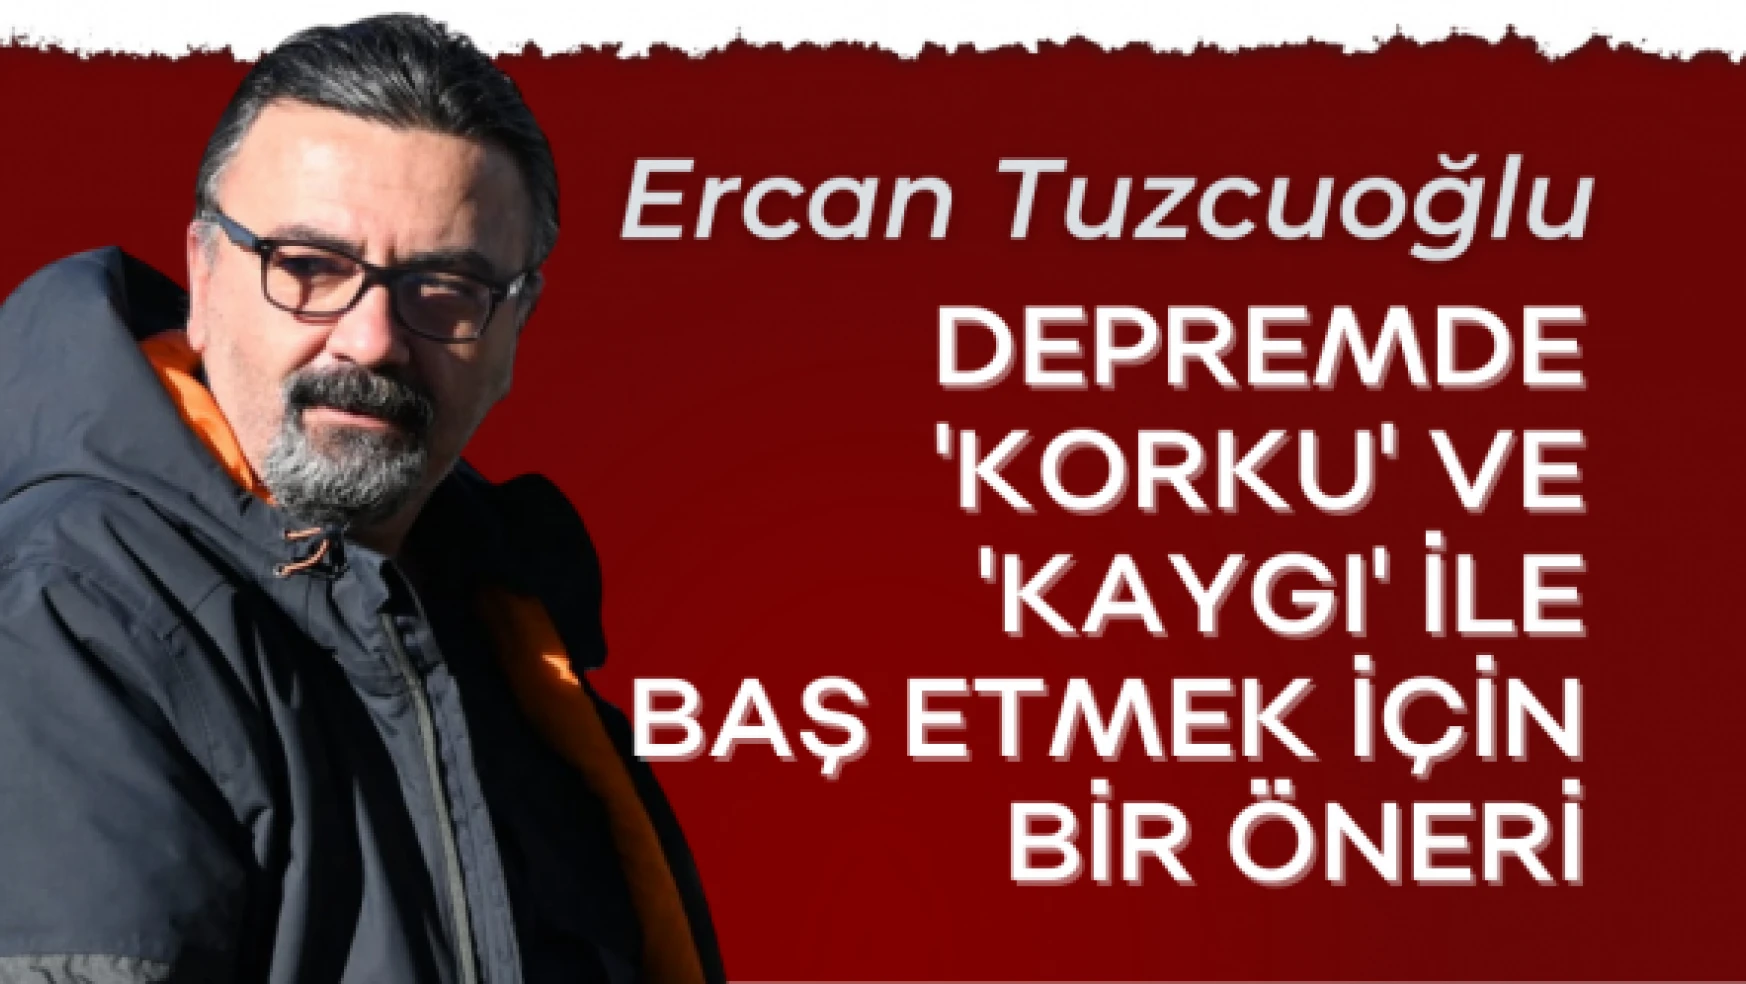 Eğitim ve Aile Danışmanı Ercan Tuzcuoğlu yazdı...